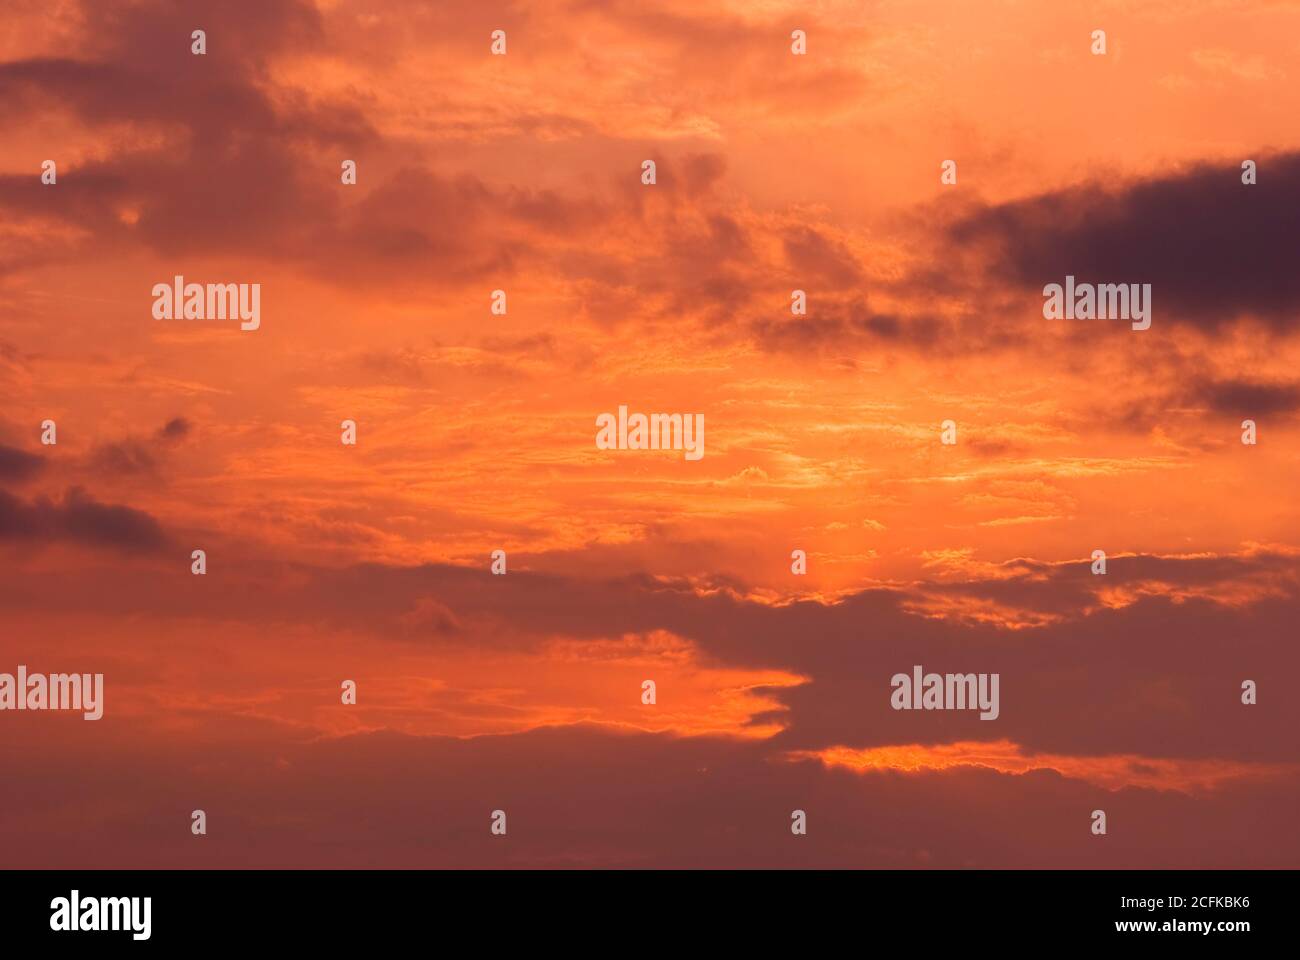 Feuerhimmel Hintergrund. Weiche Wolken mit dem Hauch der Sonne bei Sonnenuntergang. Viele Orange Töne und Muster von Wolken. Stockfoto